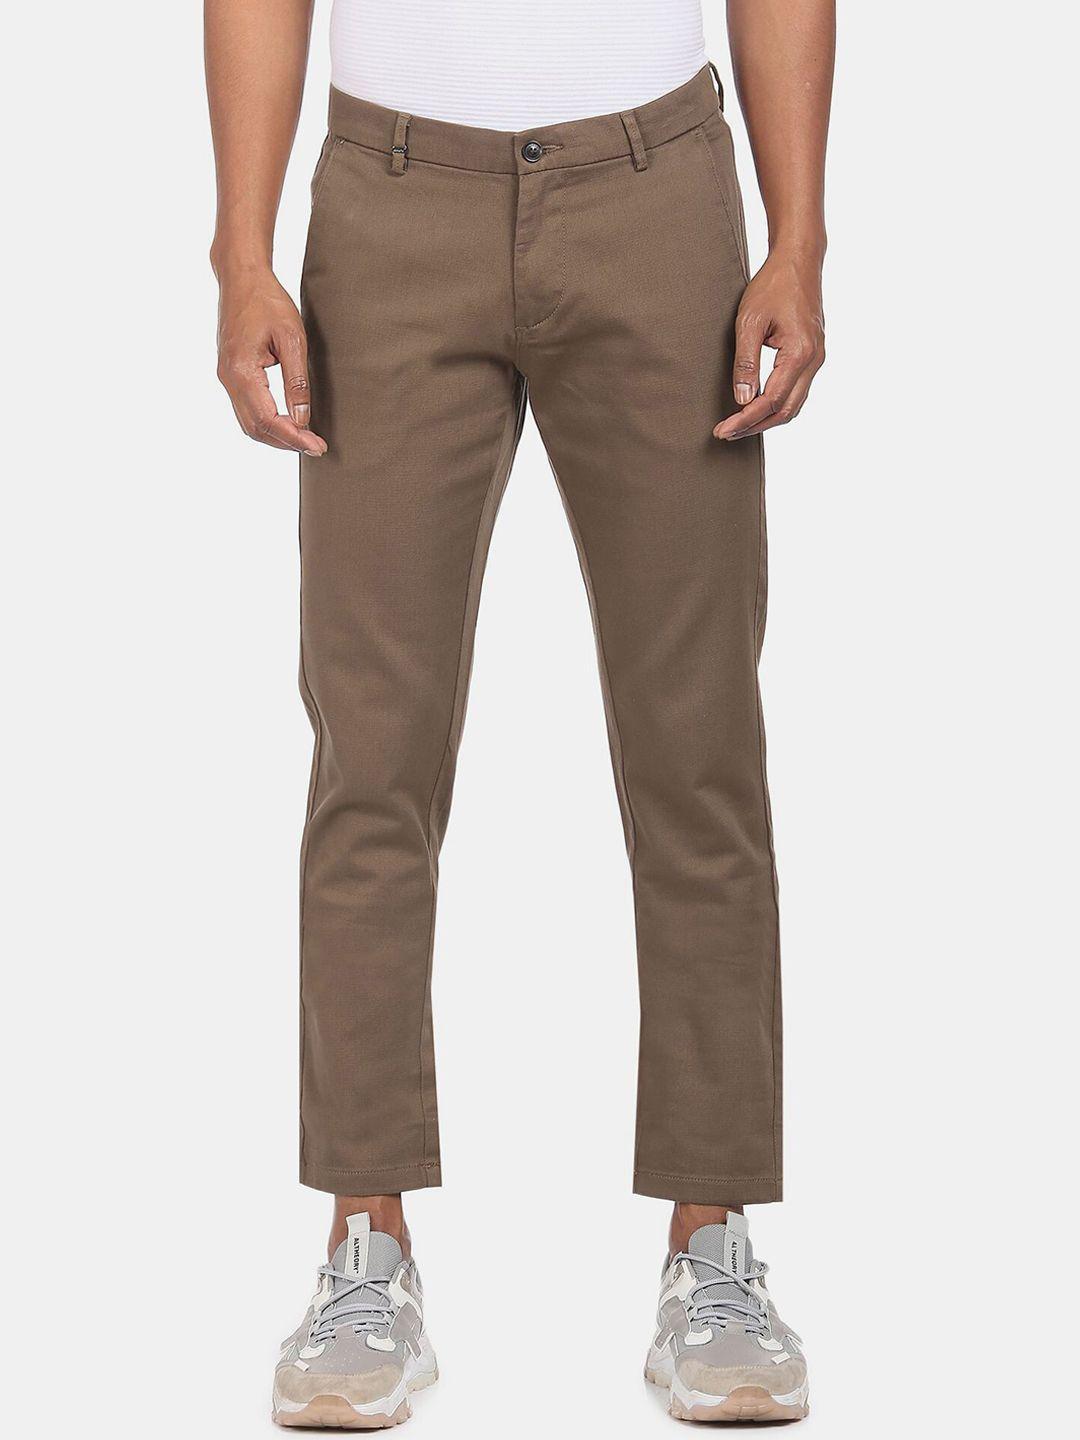 arrow-sport-men-brown-trousers